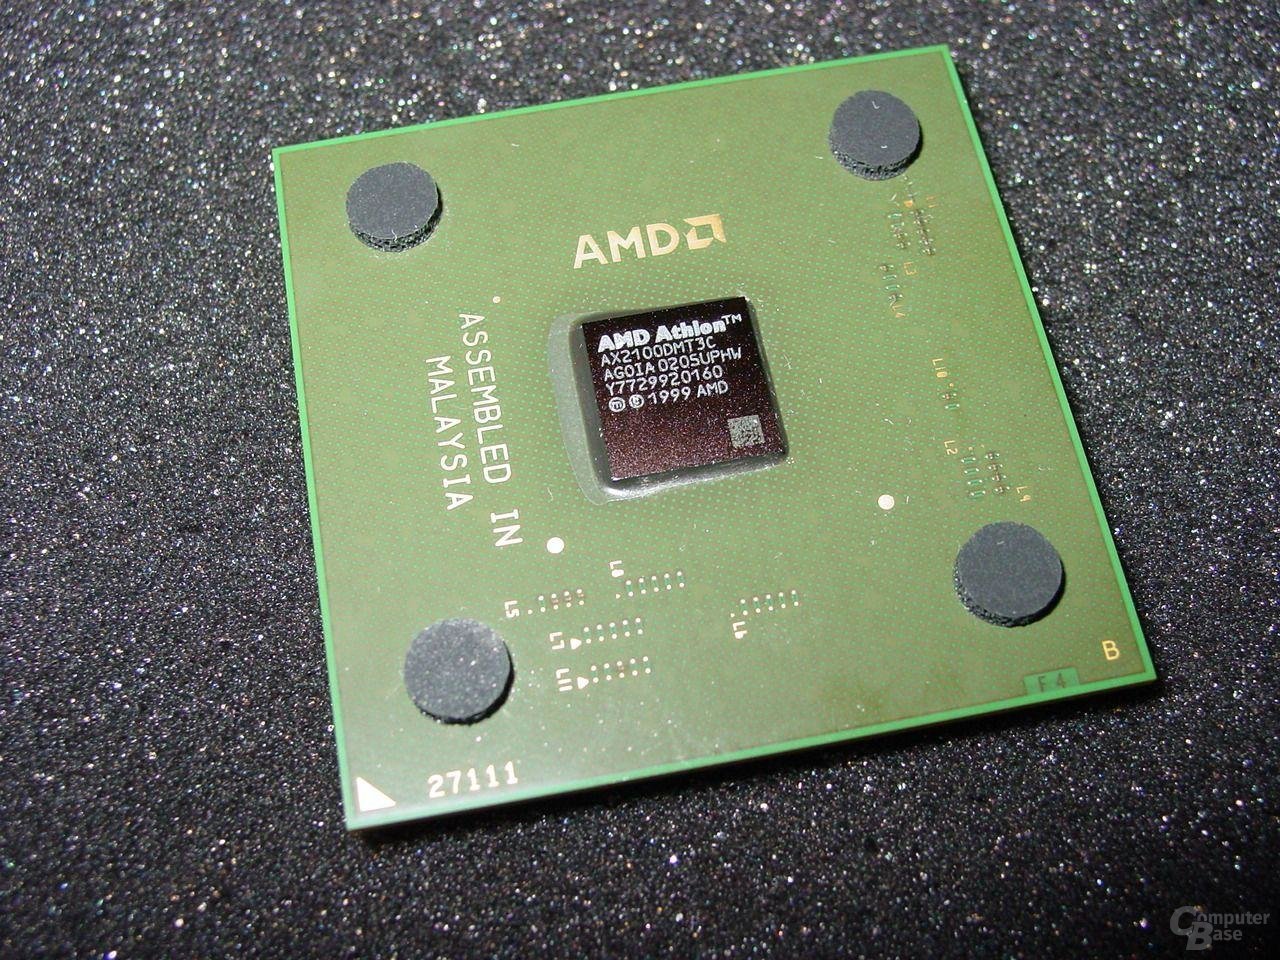 Athlon XP2100+